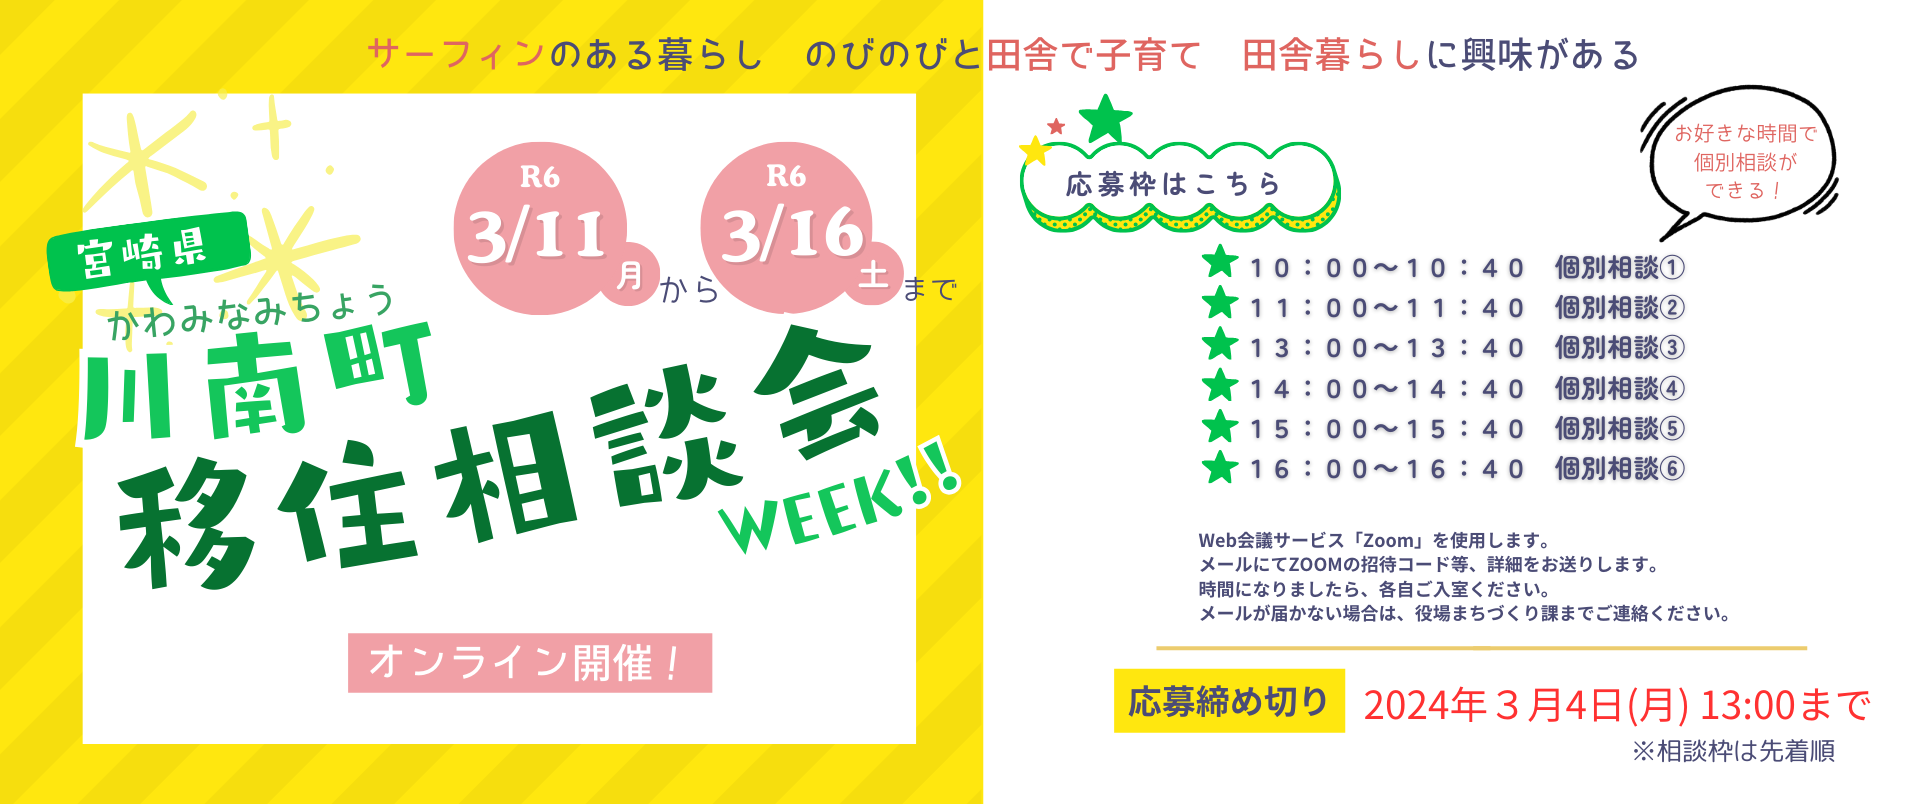 3/11(月)~3/16(土)は、オンライン移住相談会WEEK！！